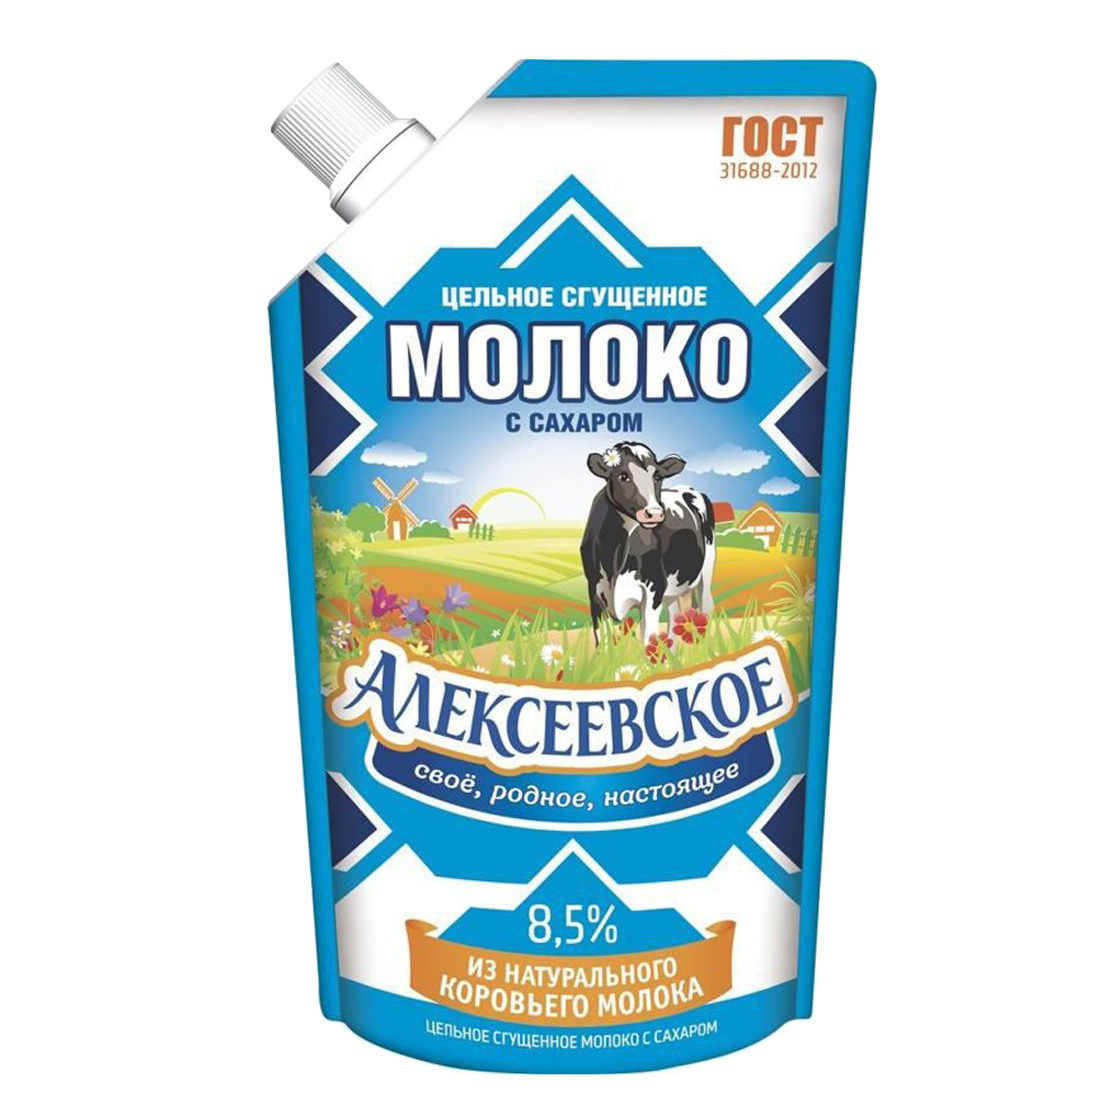 Молоко сгущенное Алексеевское 8,5% 270 г молоко сгущенное батькин резерв цельное пастеризованное с сахаром 8 5% 270 г